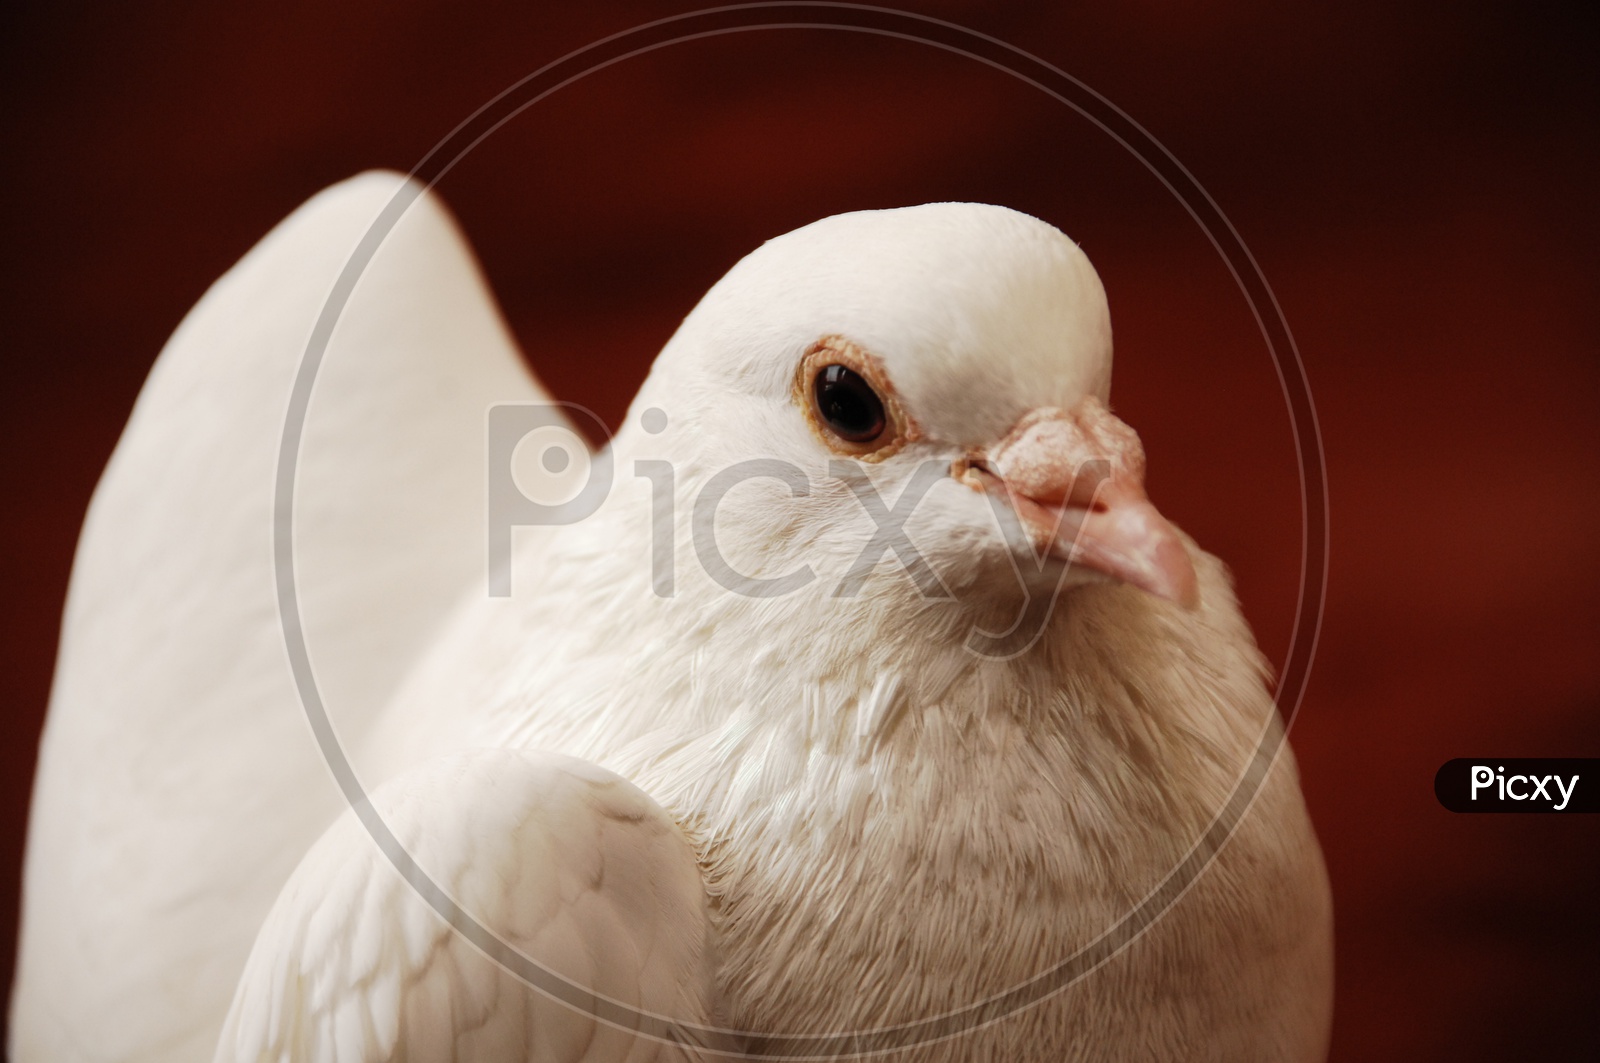 A Dove's beak